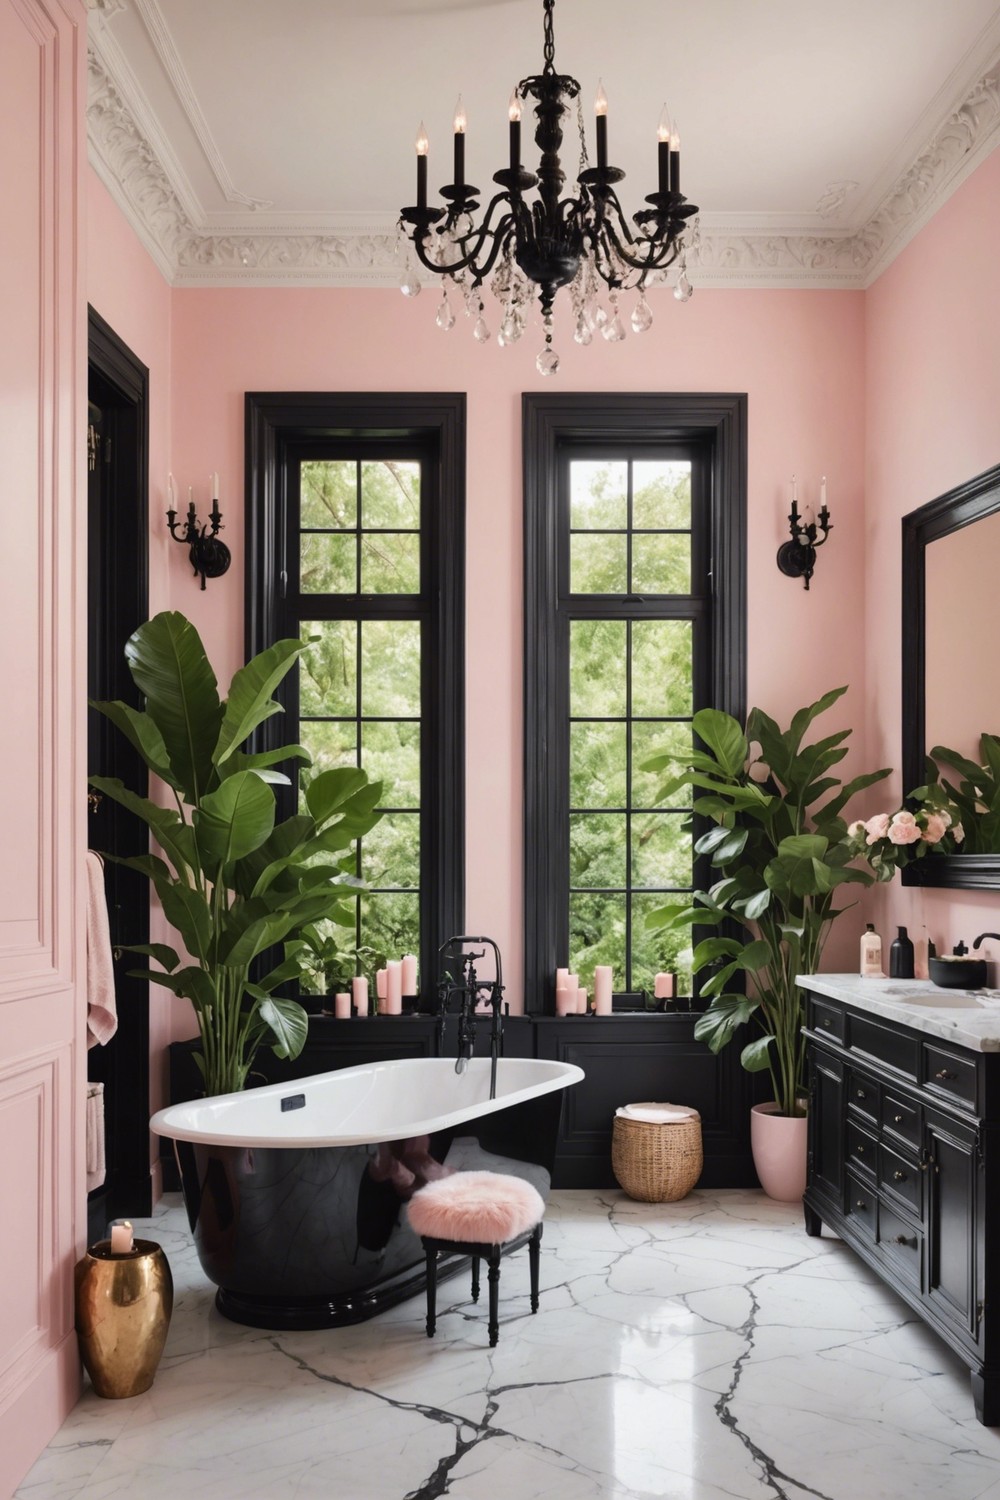 Pastel Pink and Black Bathroom